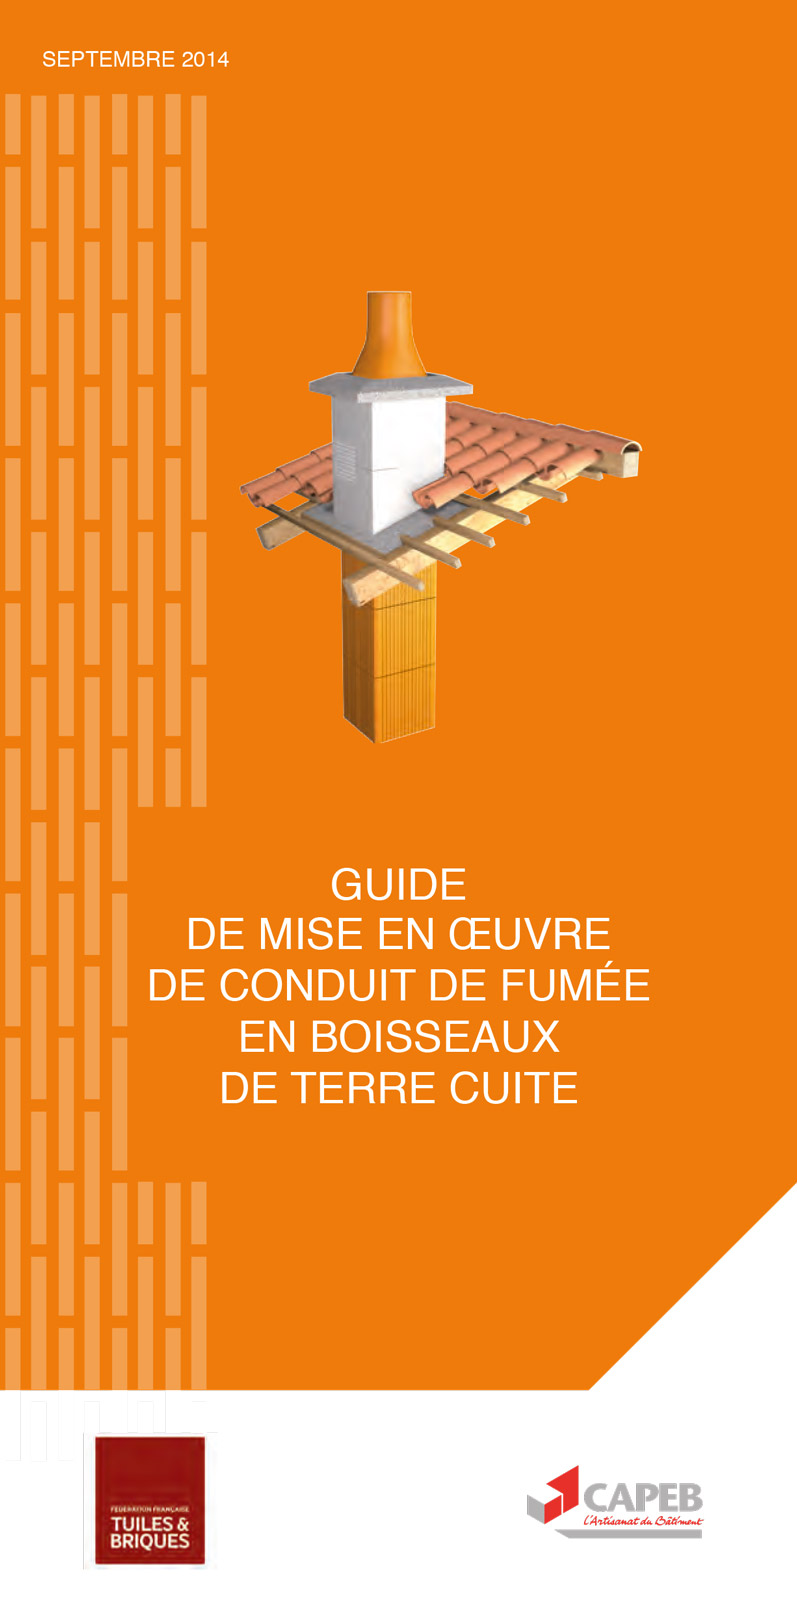 Guide de mise en œuvre de conduit de fumée en boisseaux de terre cuite, édité par la FFTB